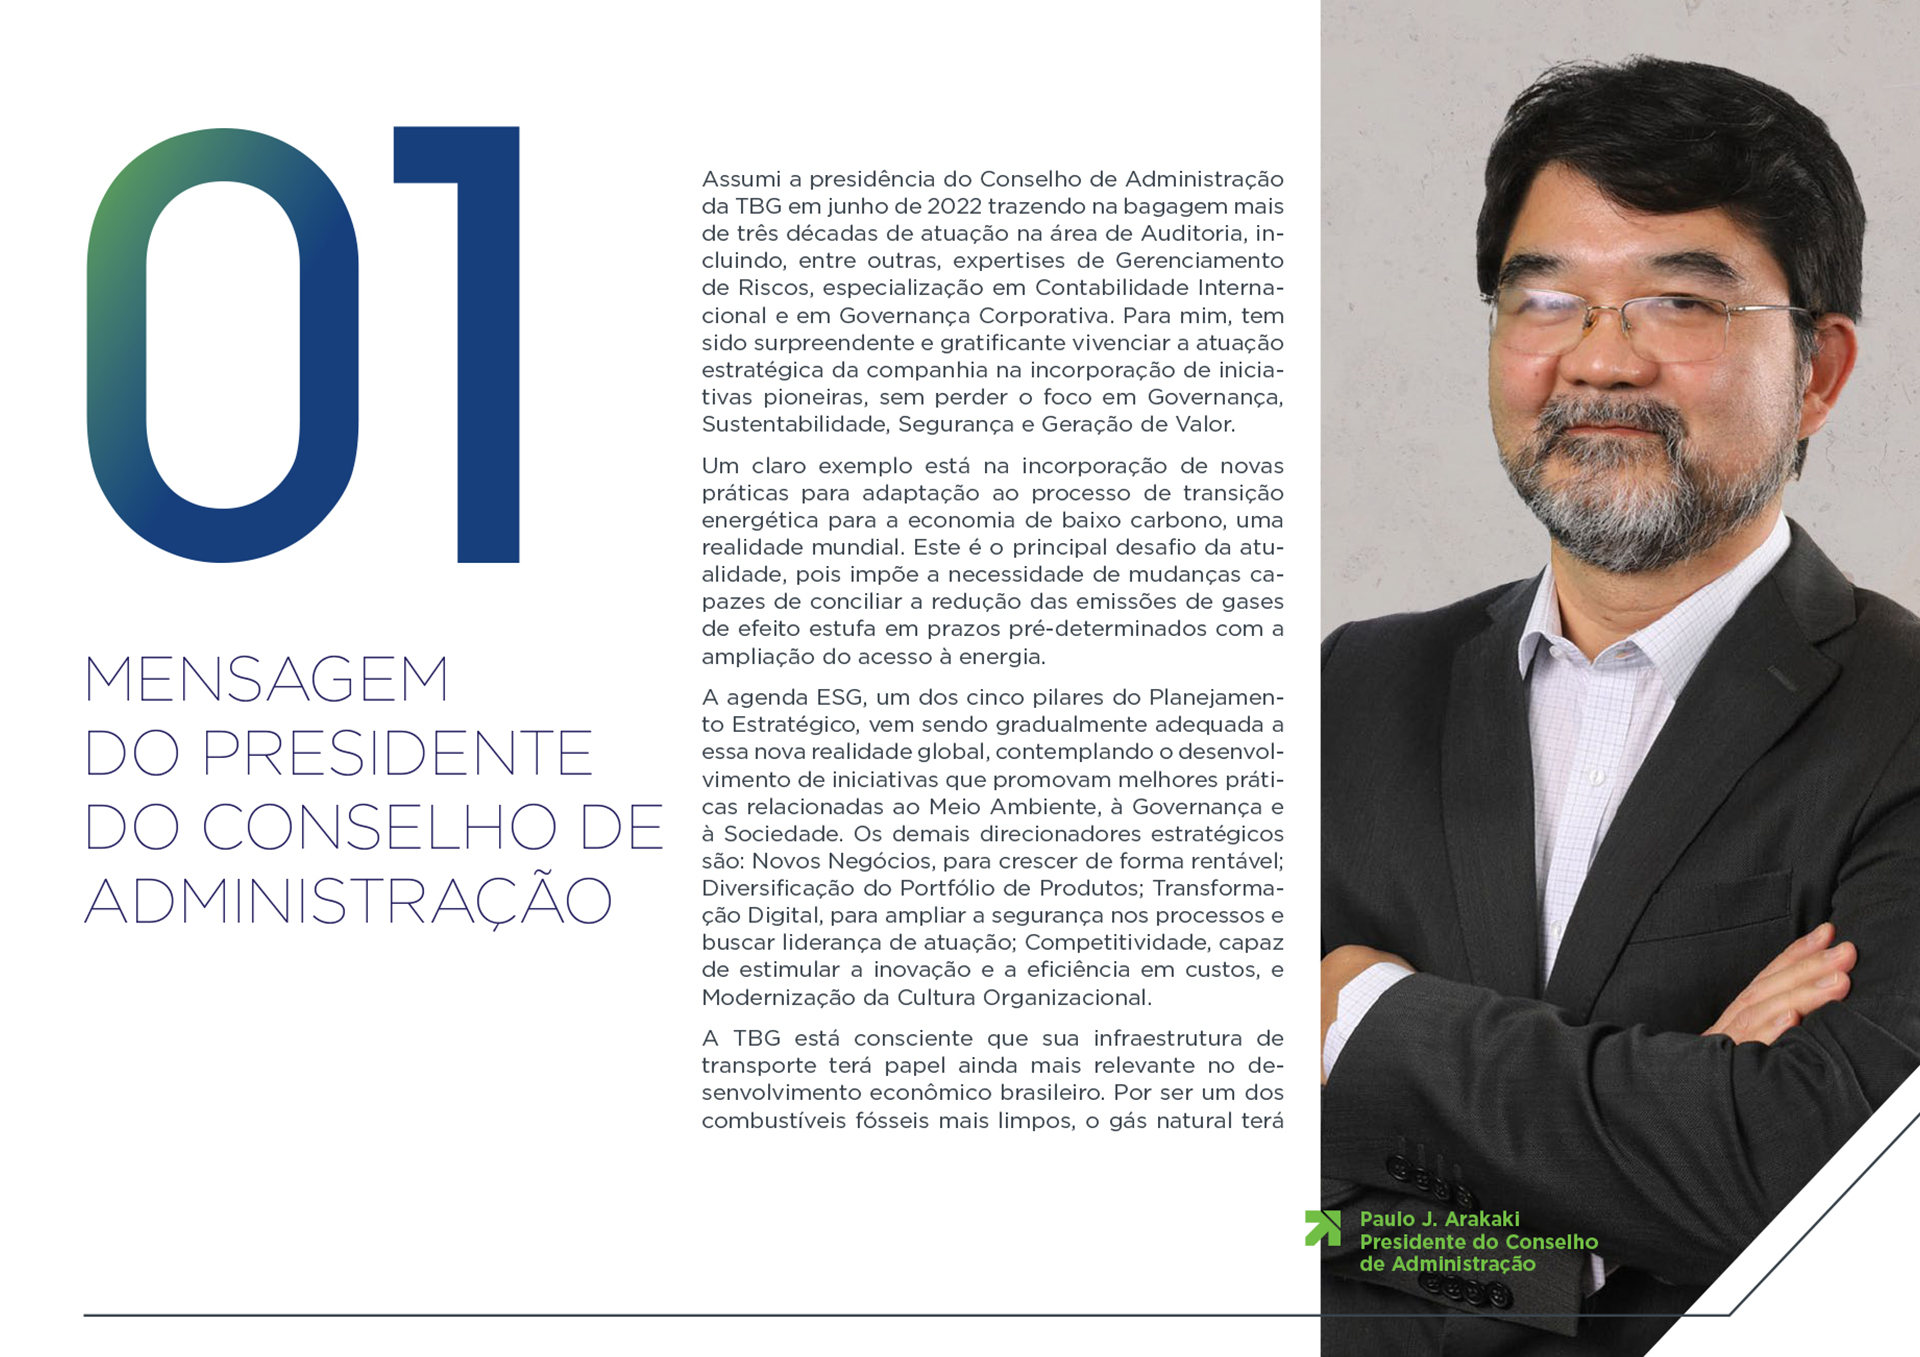 AGERT - RELATÓRIO SOCIAL 2020-2019 - paginado - Folioscópio Páginas 51-80